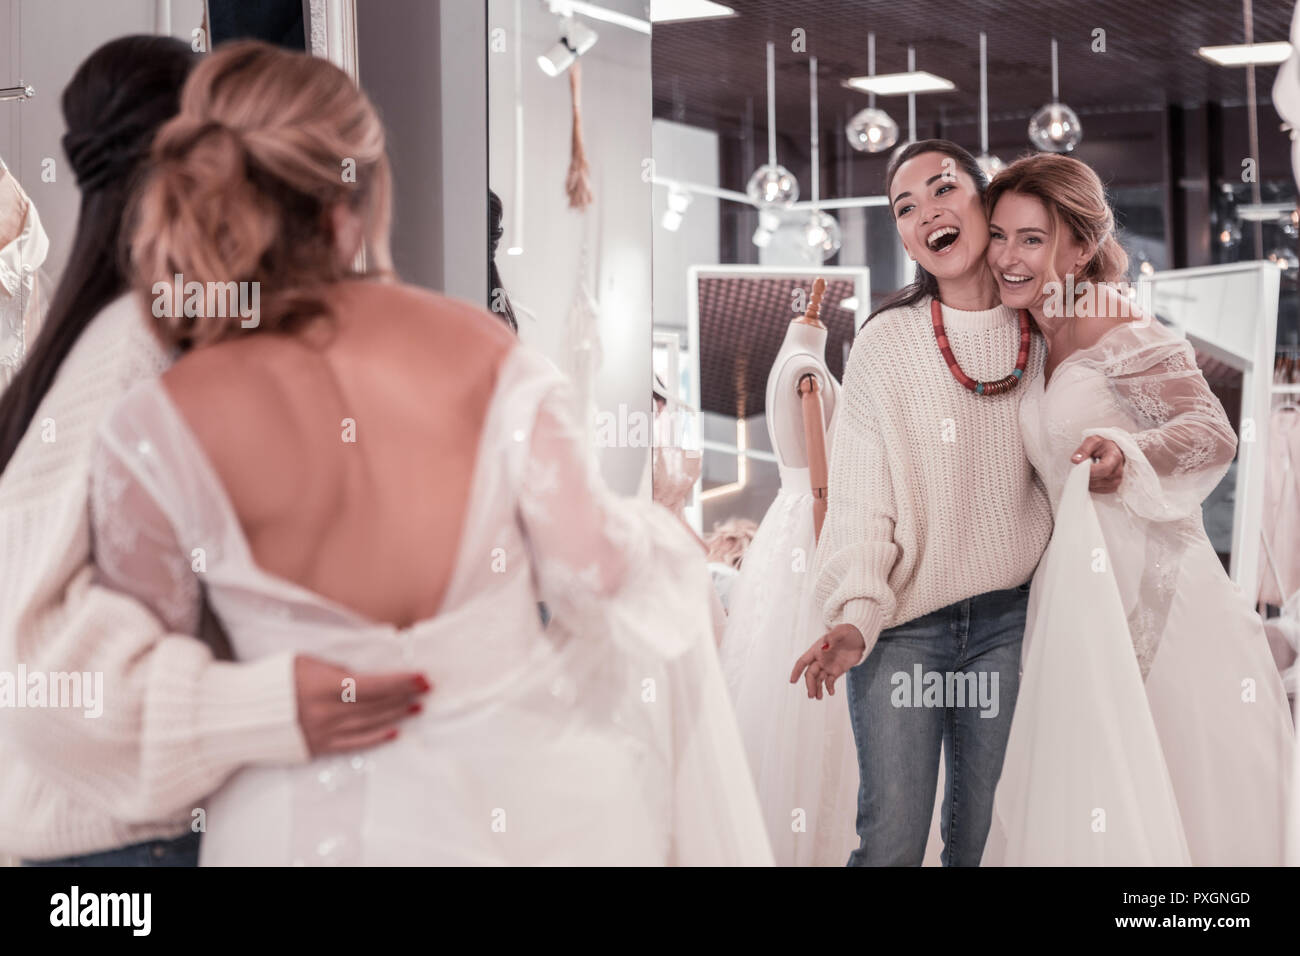 Les femmes à Nice ravis dans le miroir Banque D'Images